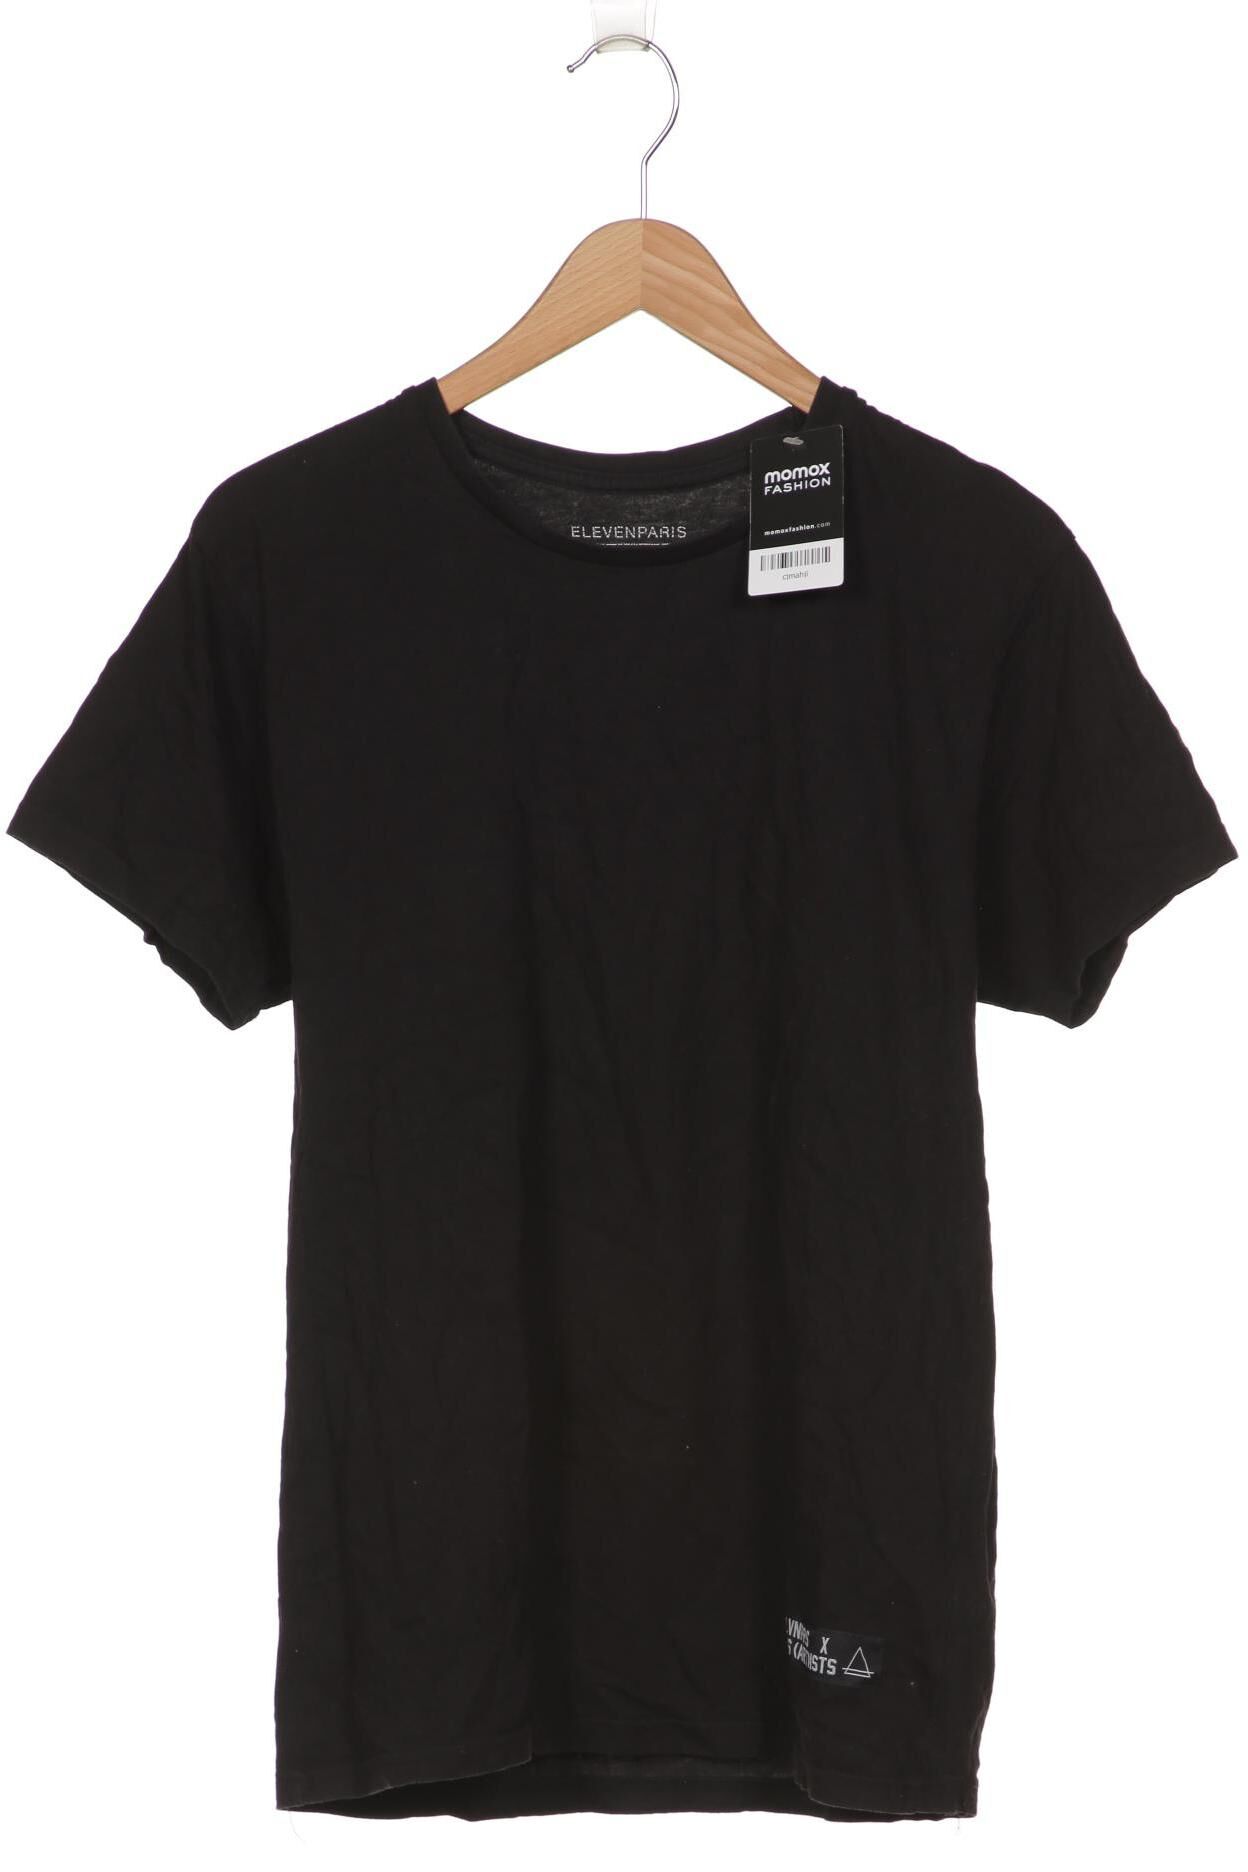 Eleven Paris T-shirt homme, noir 34